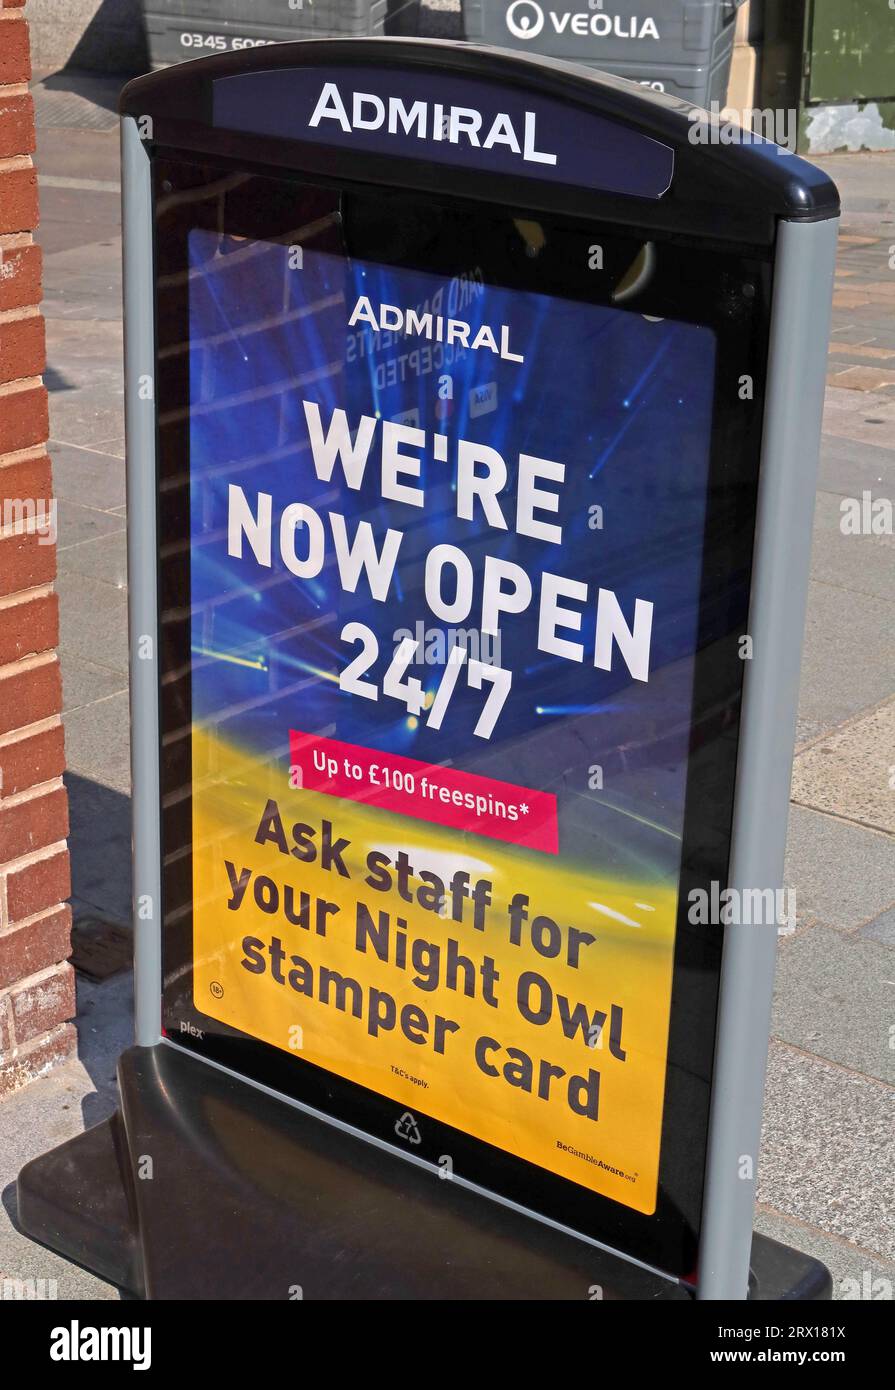 Machines à sous Novomatic Admiral casino, signe pour ouvrir 24/7 pour les joueurs de nuit hibou, 1-2 Union St, Warrington, Cheshire, Angleterre, ROYAUME-UNI, WA1 2AN Banque D'Images